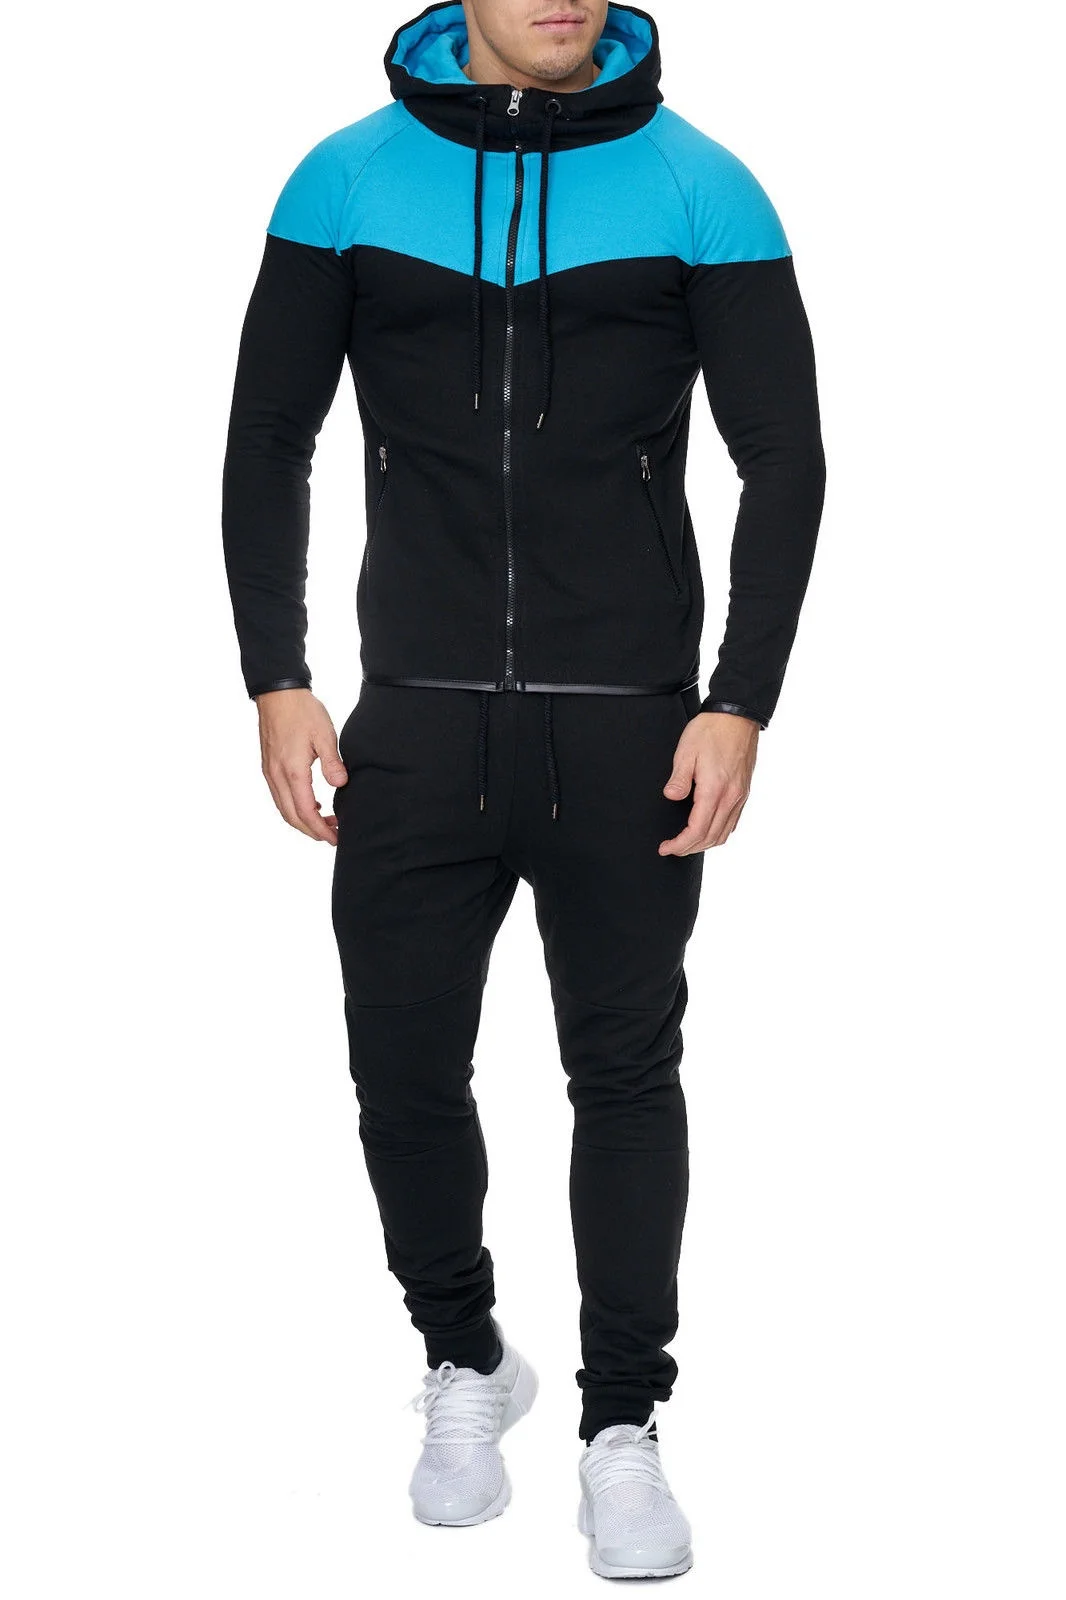 

Mens Track Suit Casual 2 Piece Set Fashion Color Block Hooded Sportswear Sweatsuit For Male Survetement Men Sportsuit